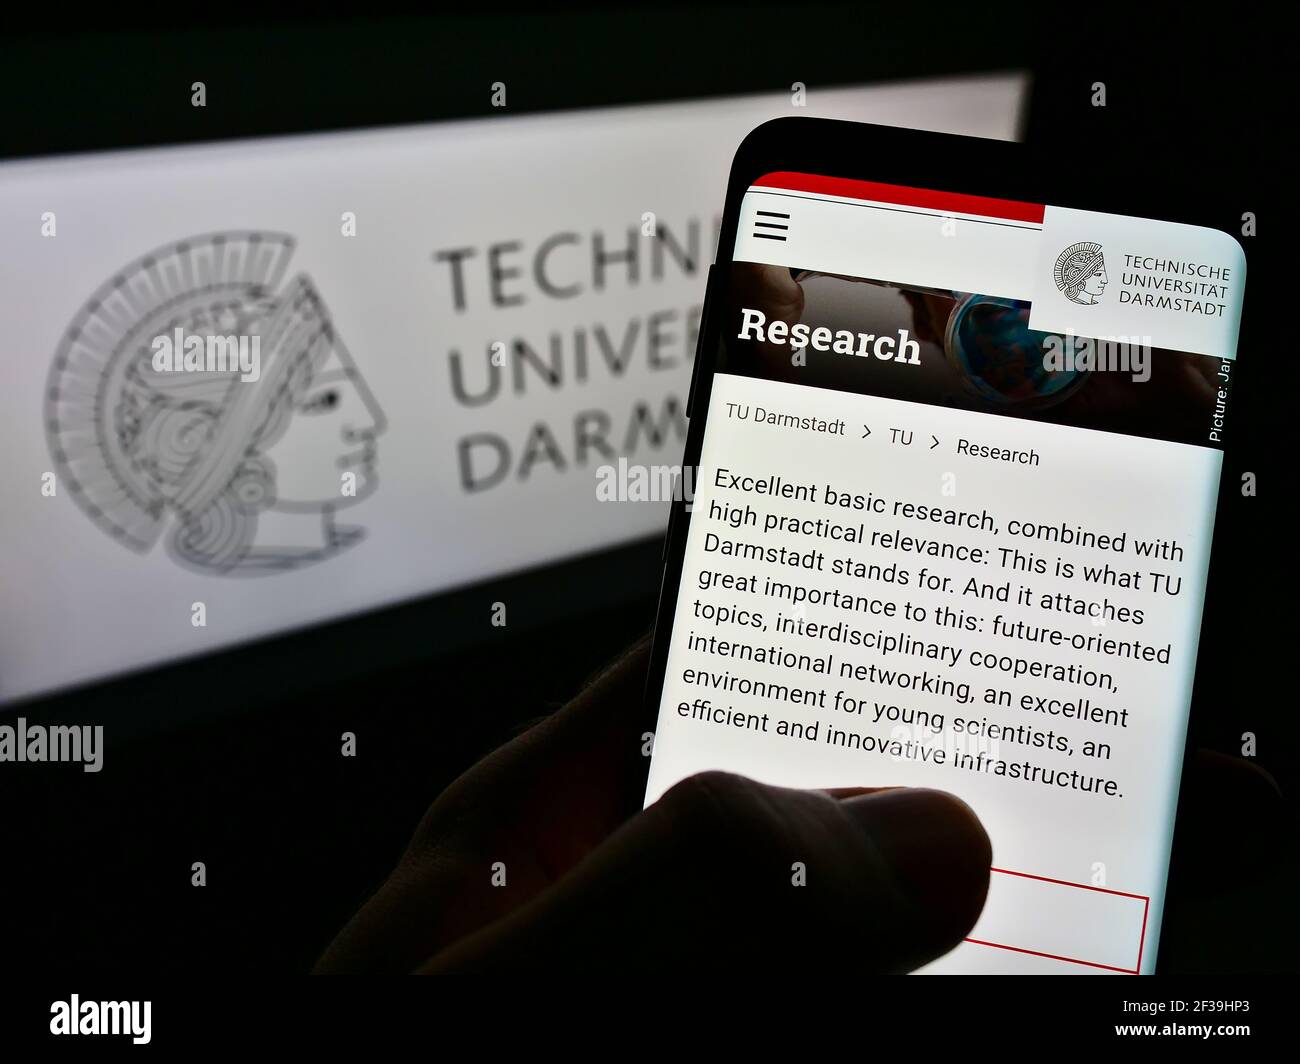 Persona que sostiene el teléfono celular con la página web de la Universidad Alemana de Tecnología de Darmstadt en la pantalla frente al logotipo. Enfoque en el centro de la pantalla del teléfono. Foto de stock